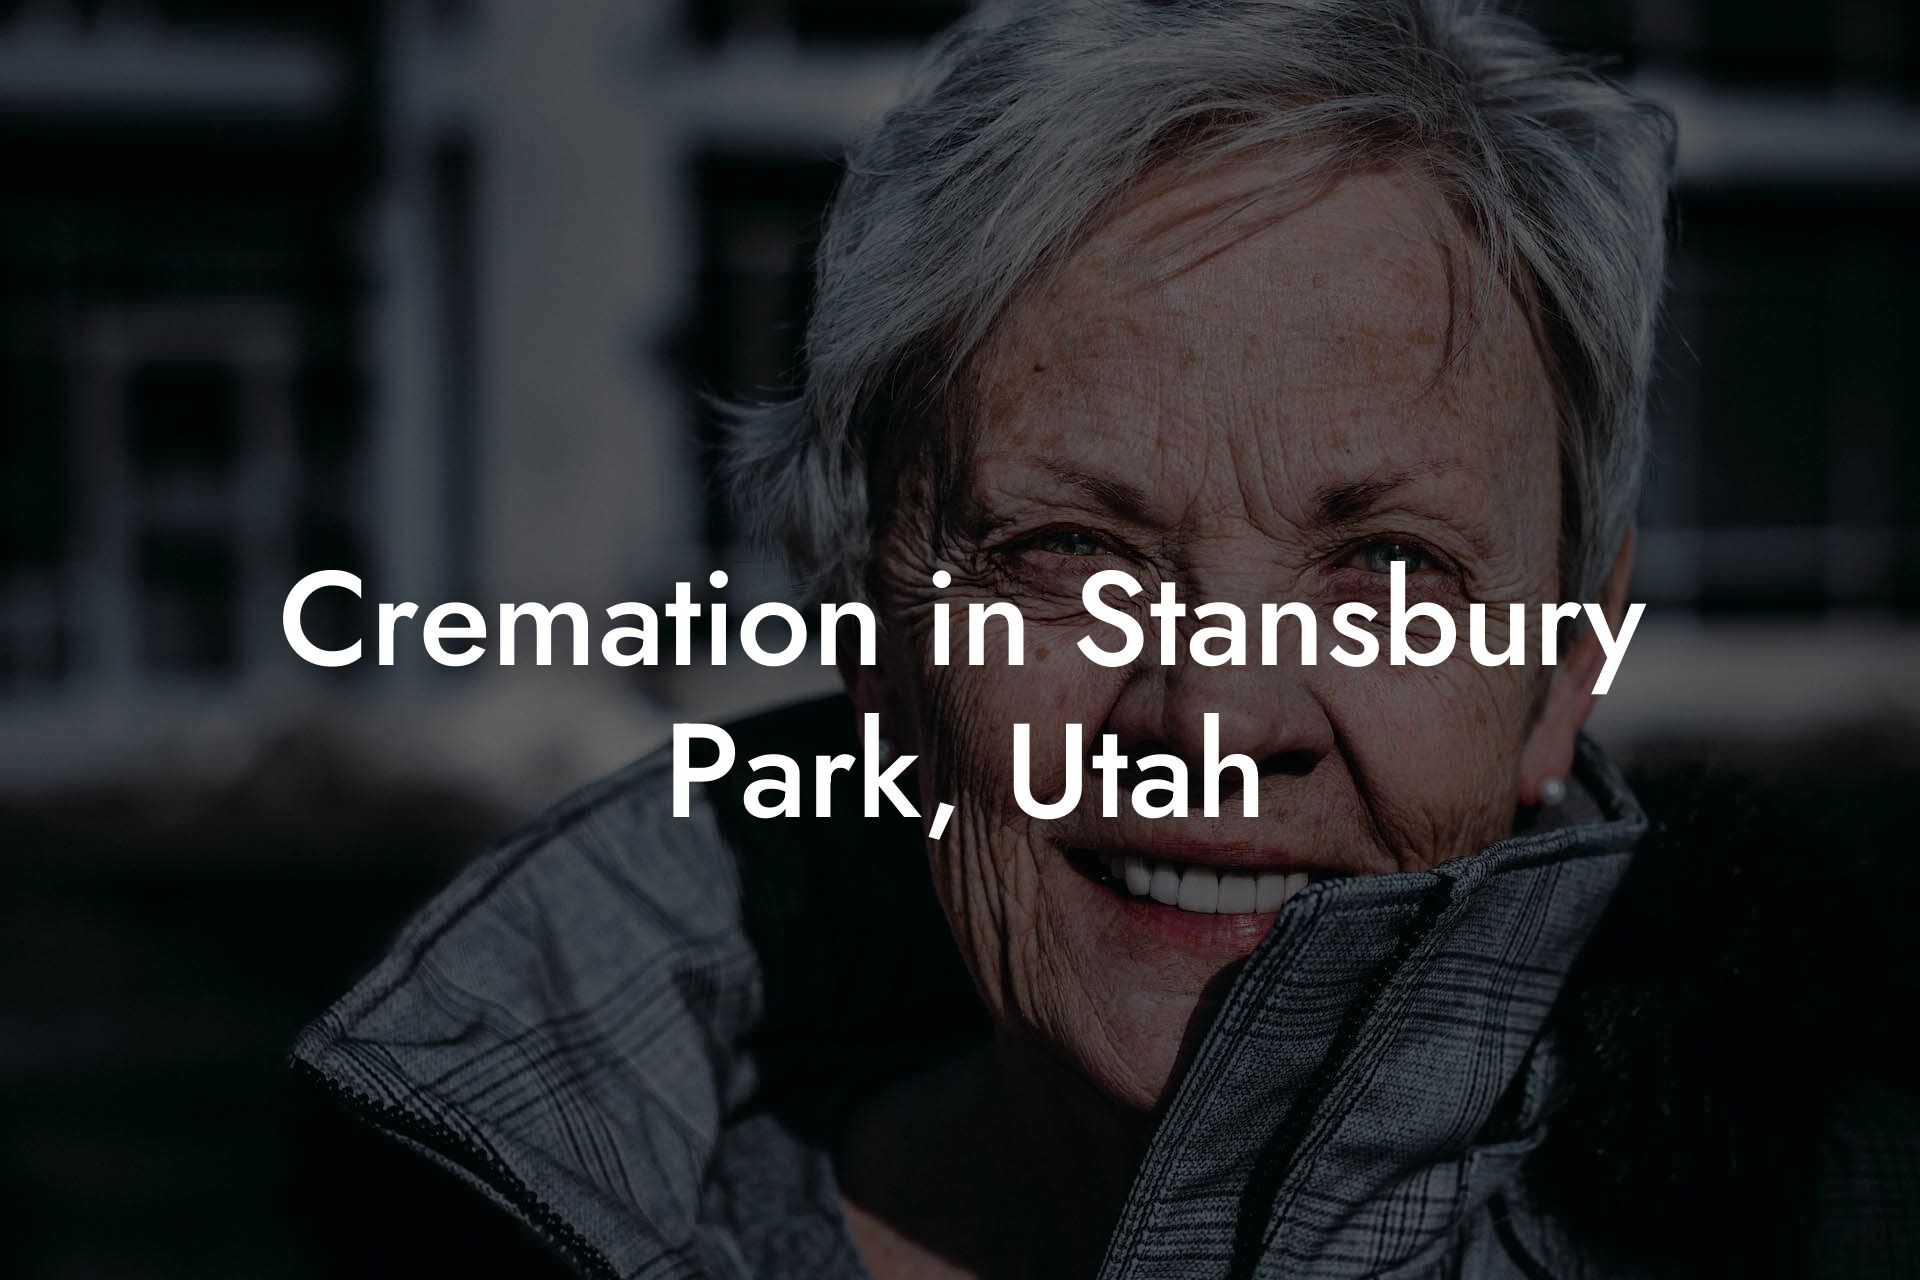 Cremation in Stansbury Park, Utah